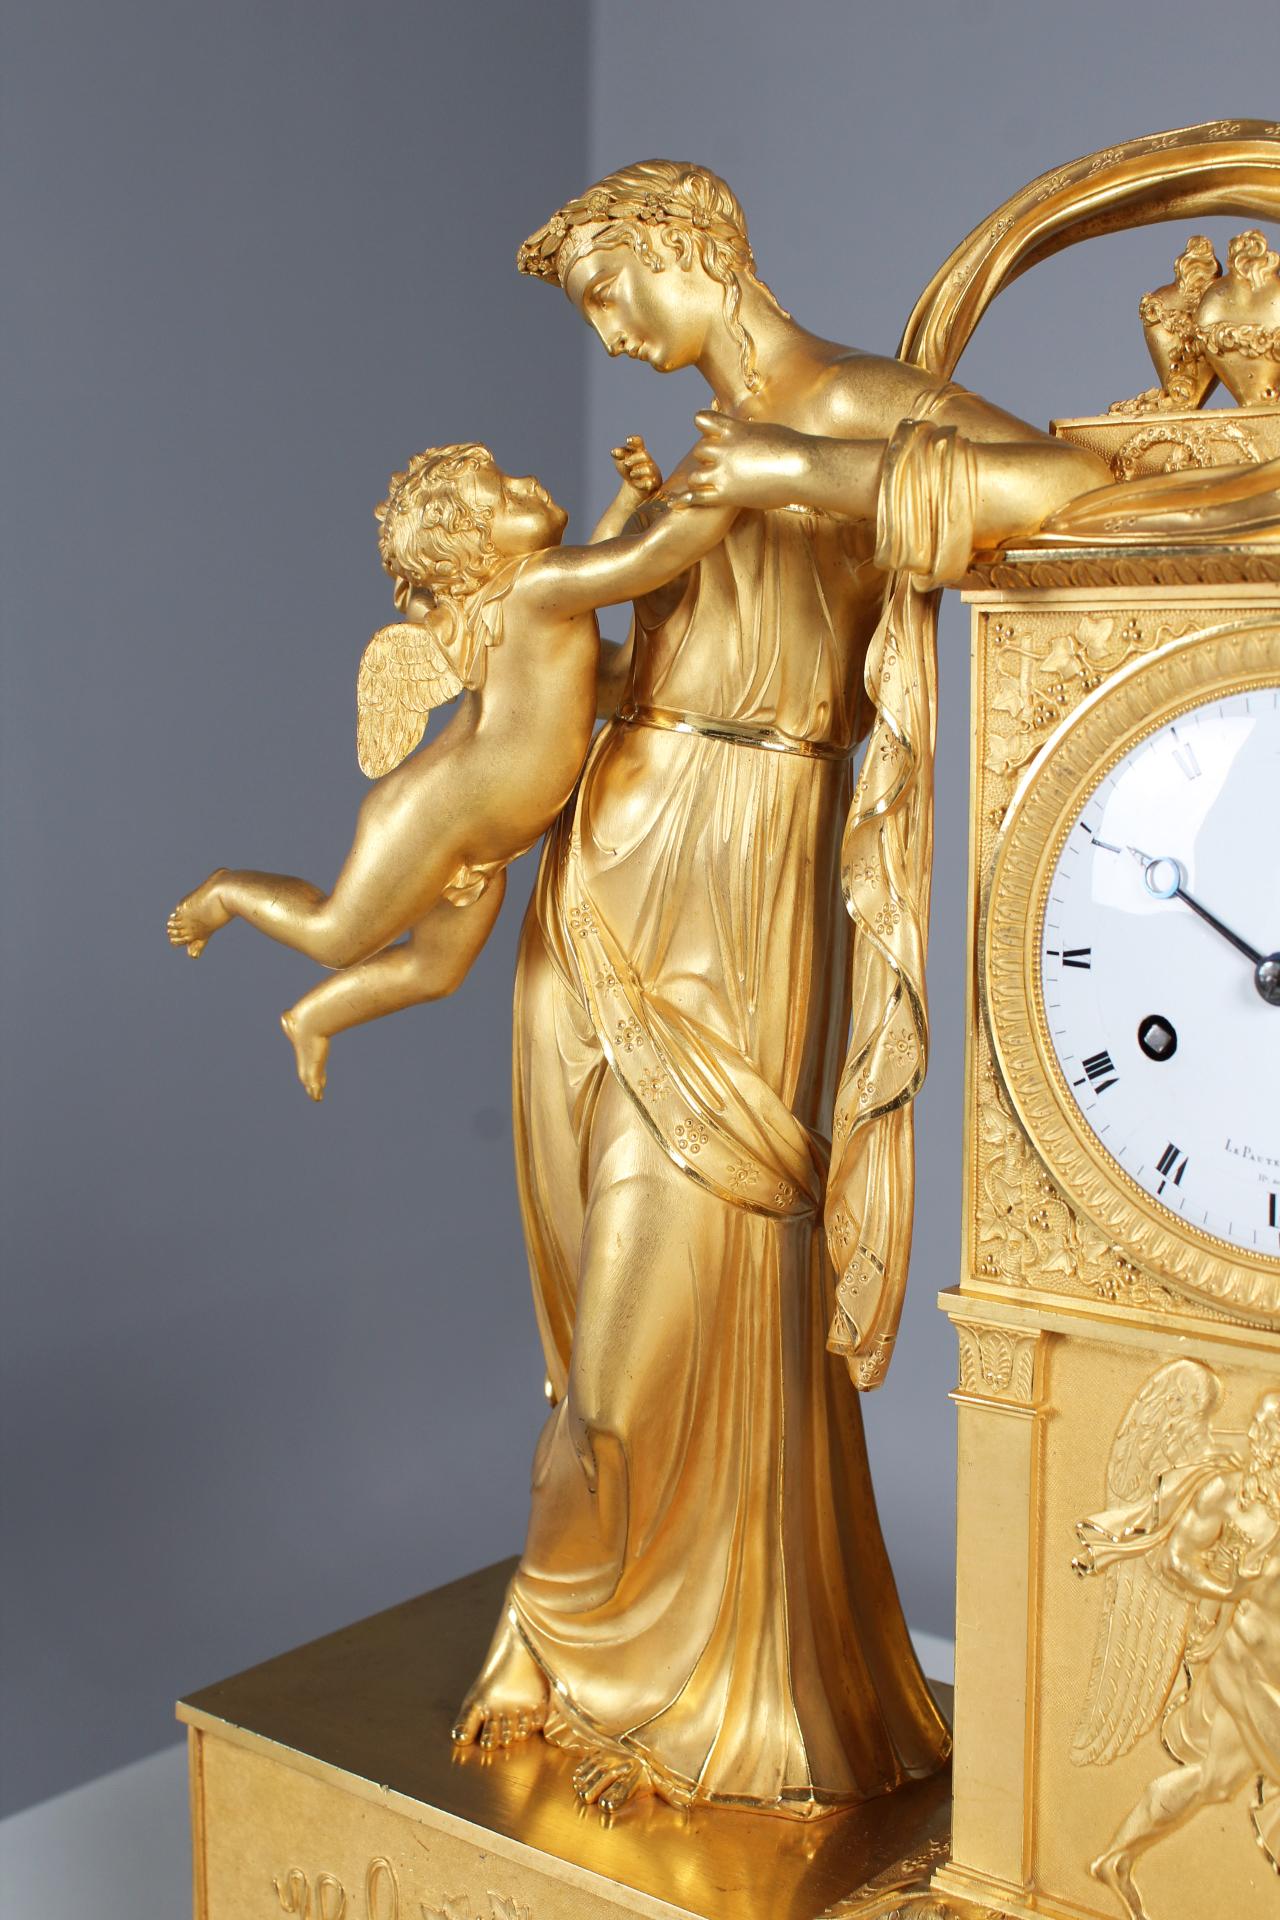 Ormulu pendule avec la représentation de l'amitié et de l'amour

Paris (Lepaute, Thomire)
bronze doré au feu
L'Empire vers 1815

Dimensions : H x L x P : 44 x 36 x 13 cm

Mouvement pendulaire français d'une durée de huit jours. Mouvement à